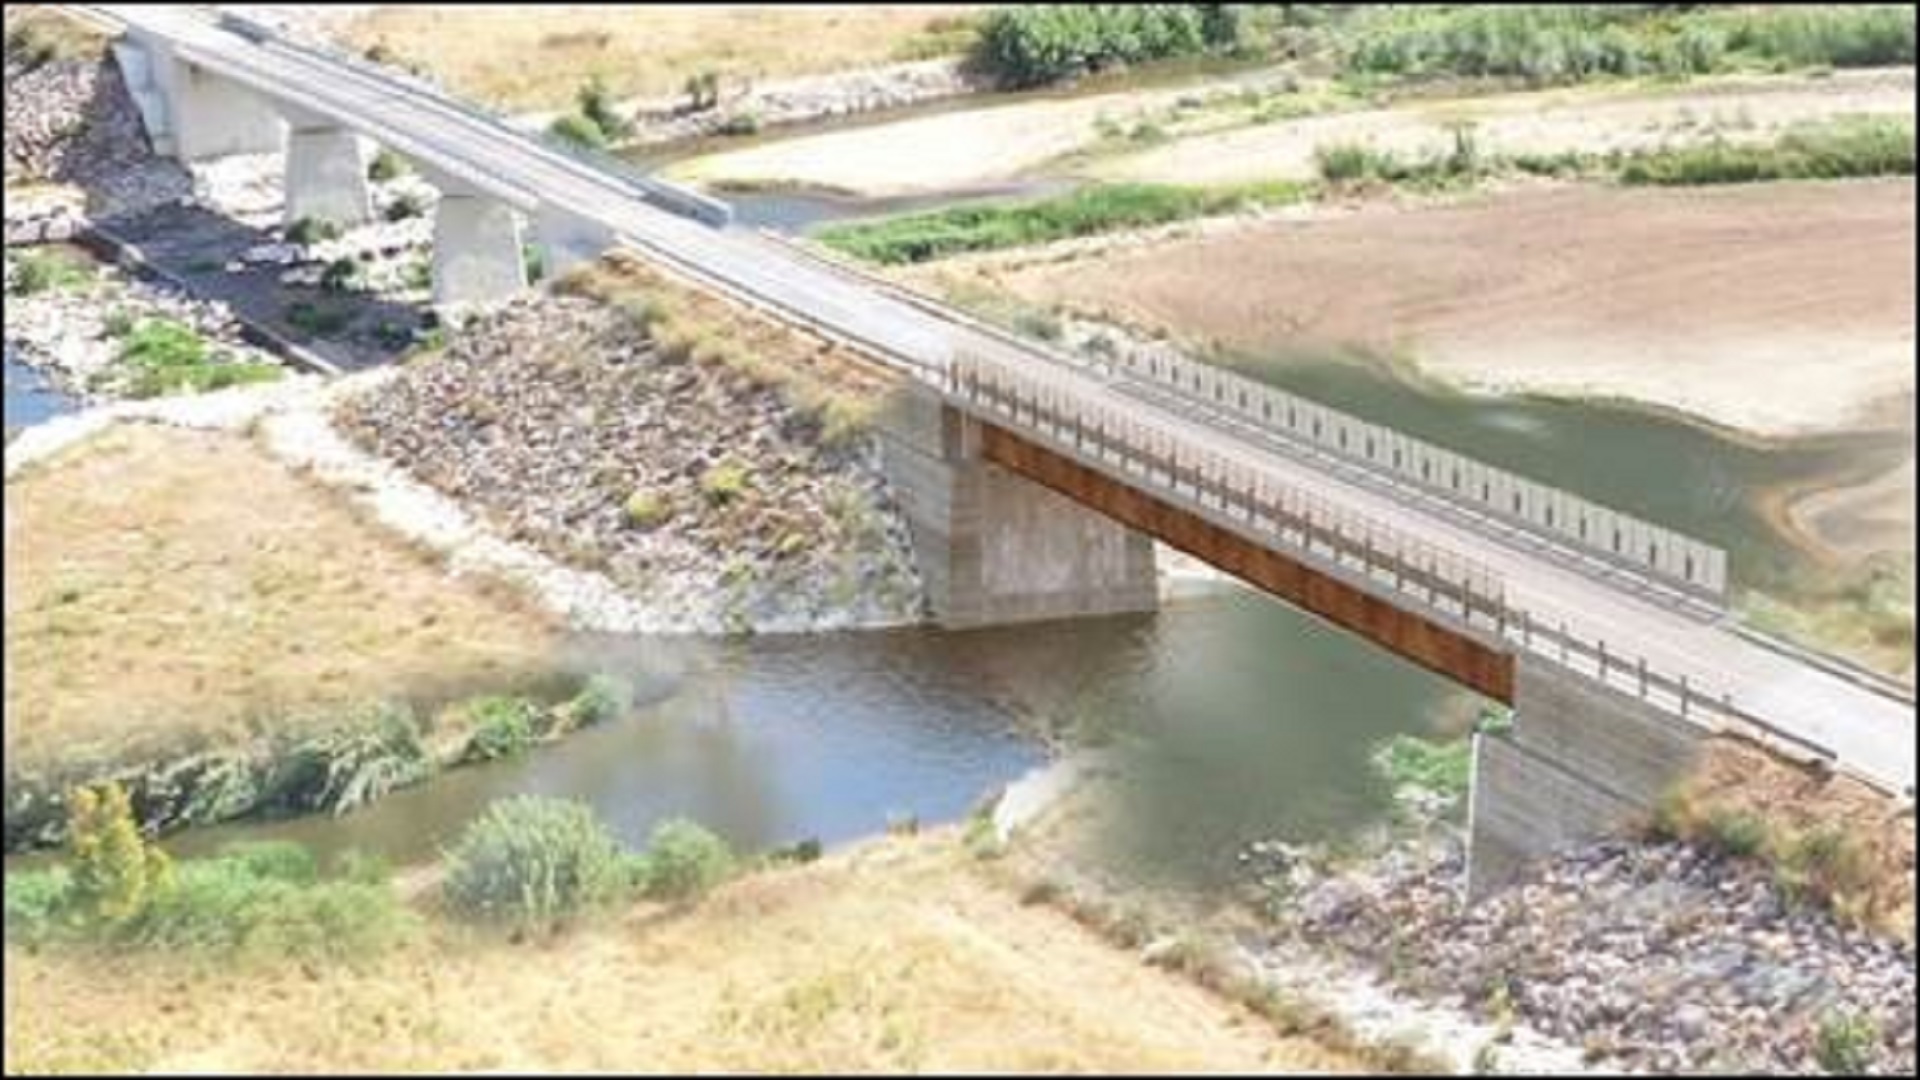 Interventi di miglioramento della funzionalità statica e idraulica del ponte di “Oloè”